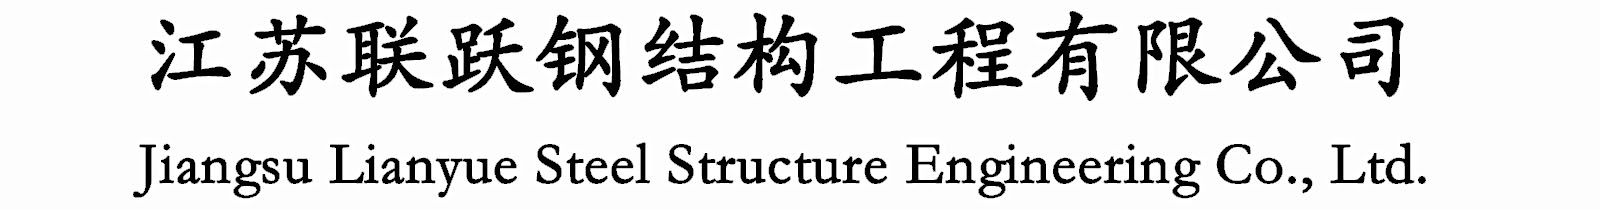 江苏联跃钢结构工程有限公司